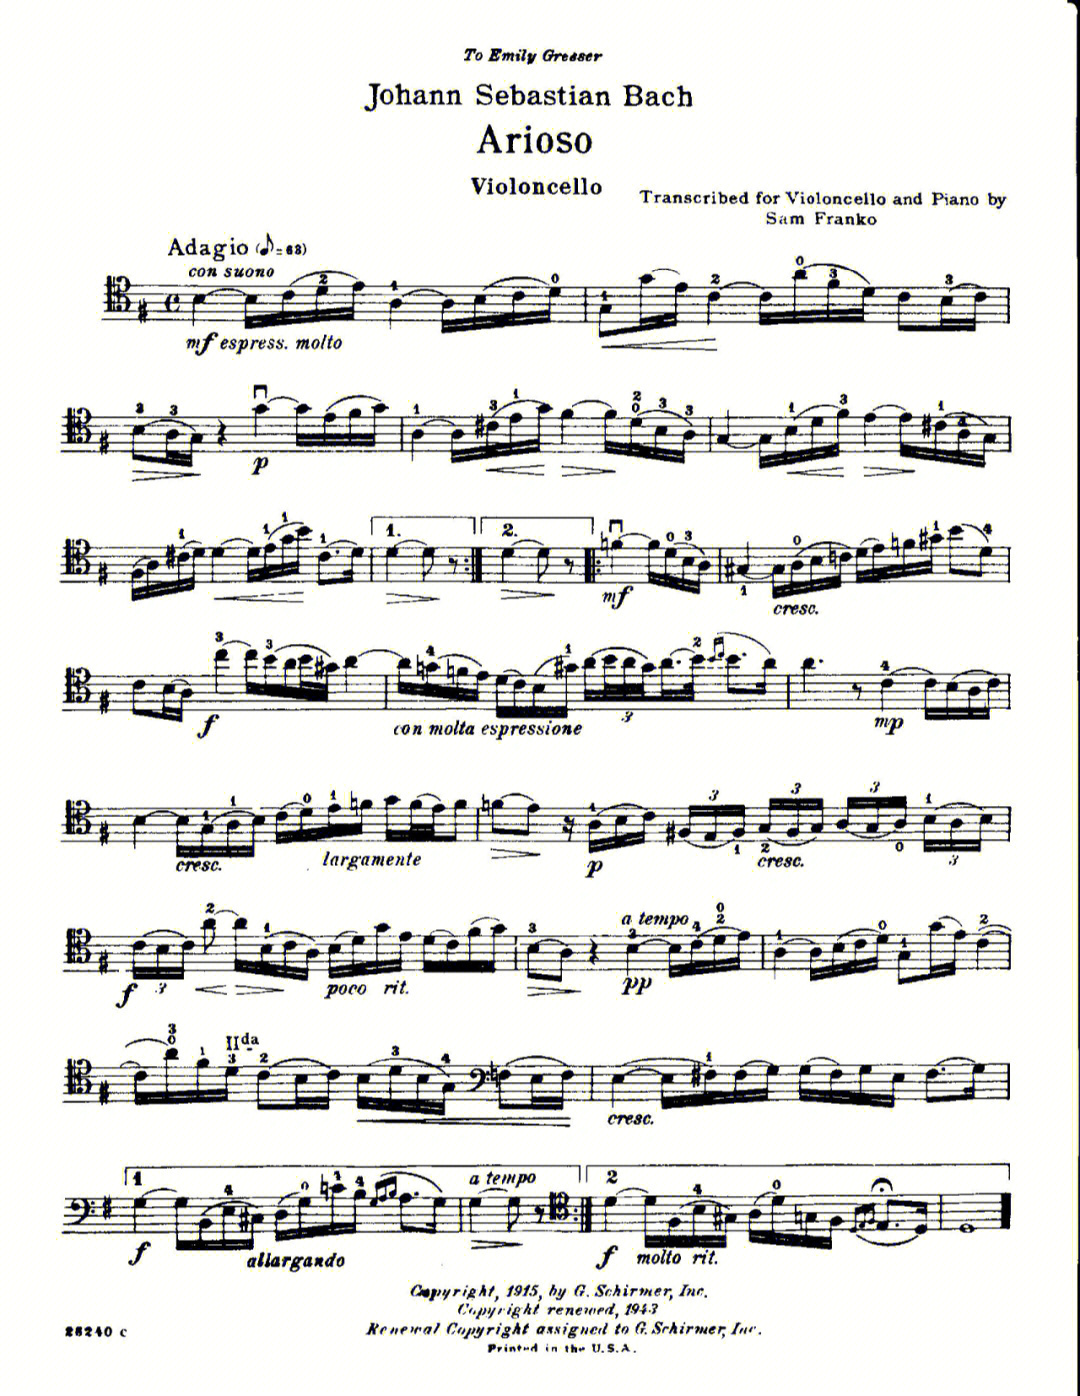 巴赫g大调小提琴曲谱图片